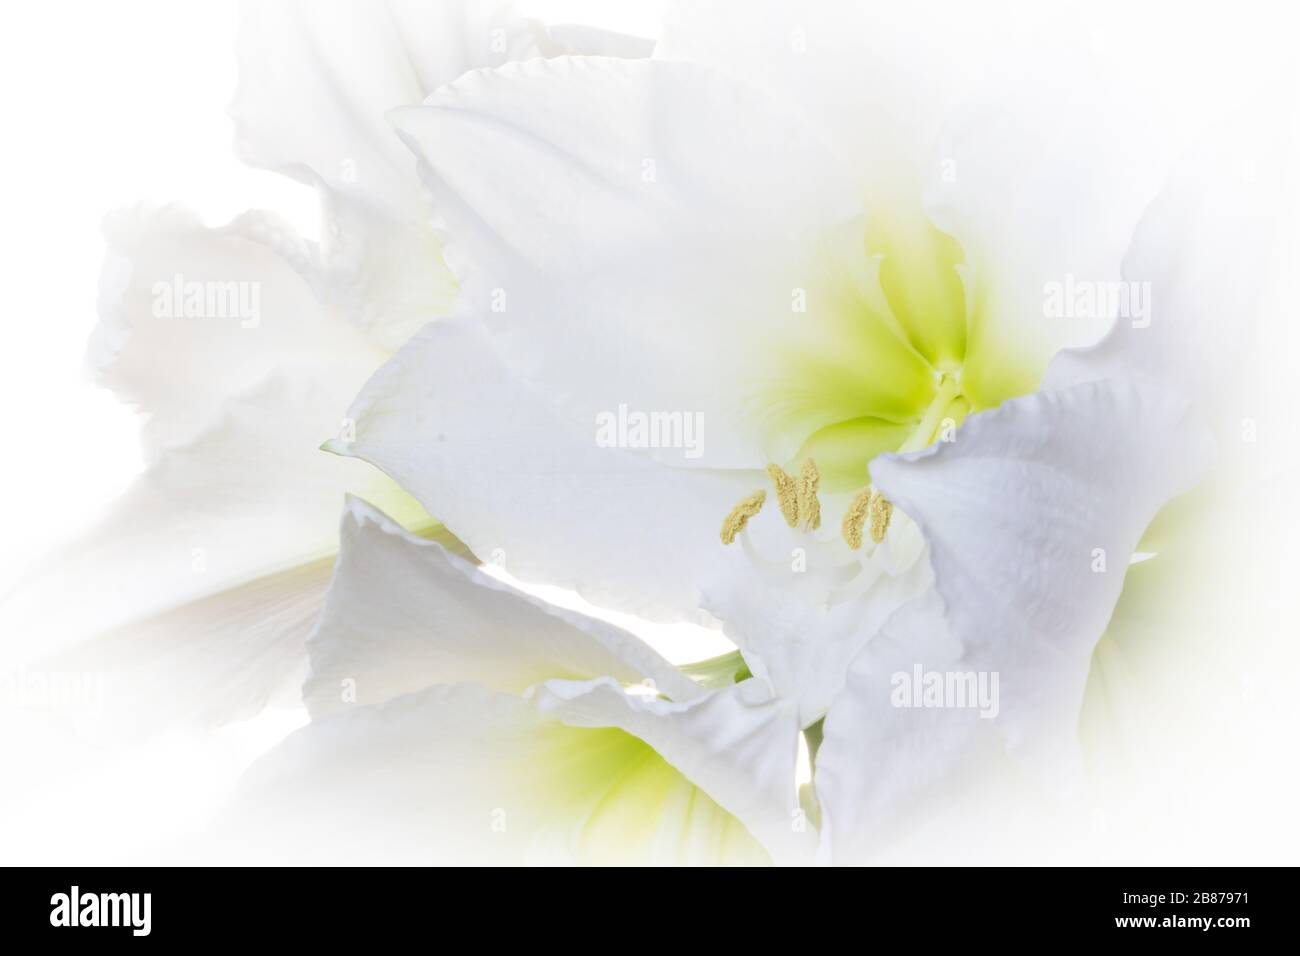 Traumhafte Blumenstrauß weiße Amaryllis (Amaryllidaceen, Hippeastrum). Deutschland hintergrundbeleuchtete Fotografie Stockfoto